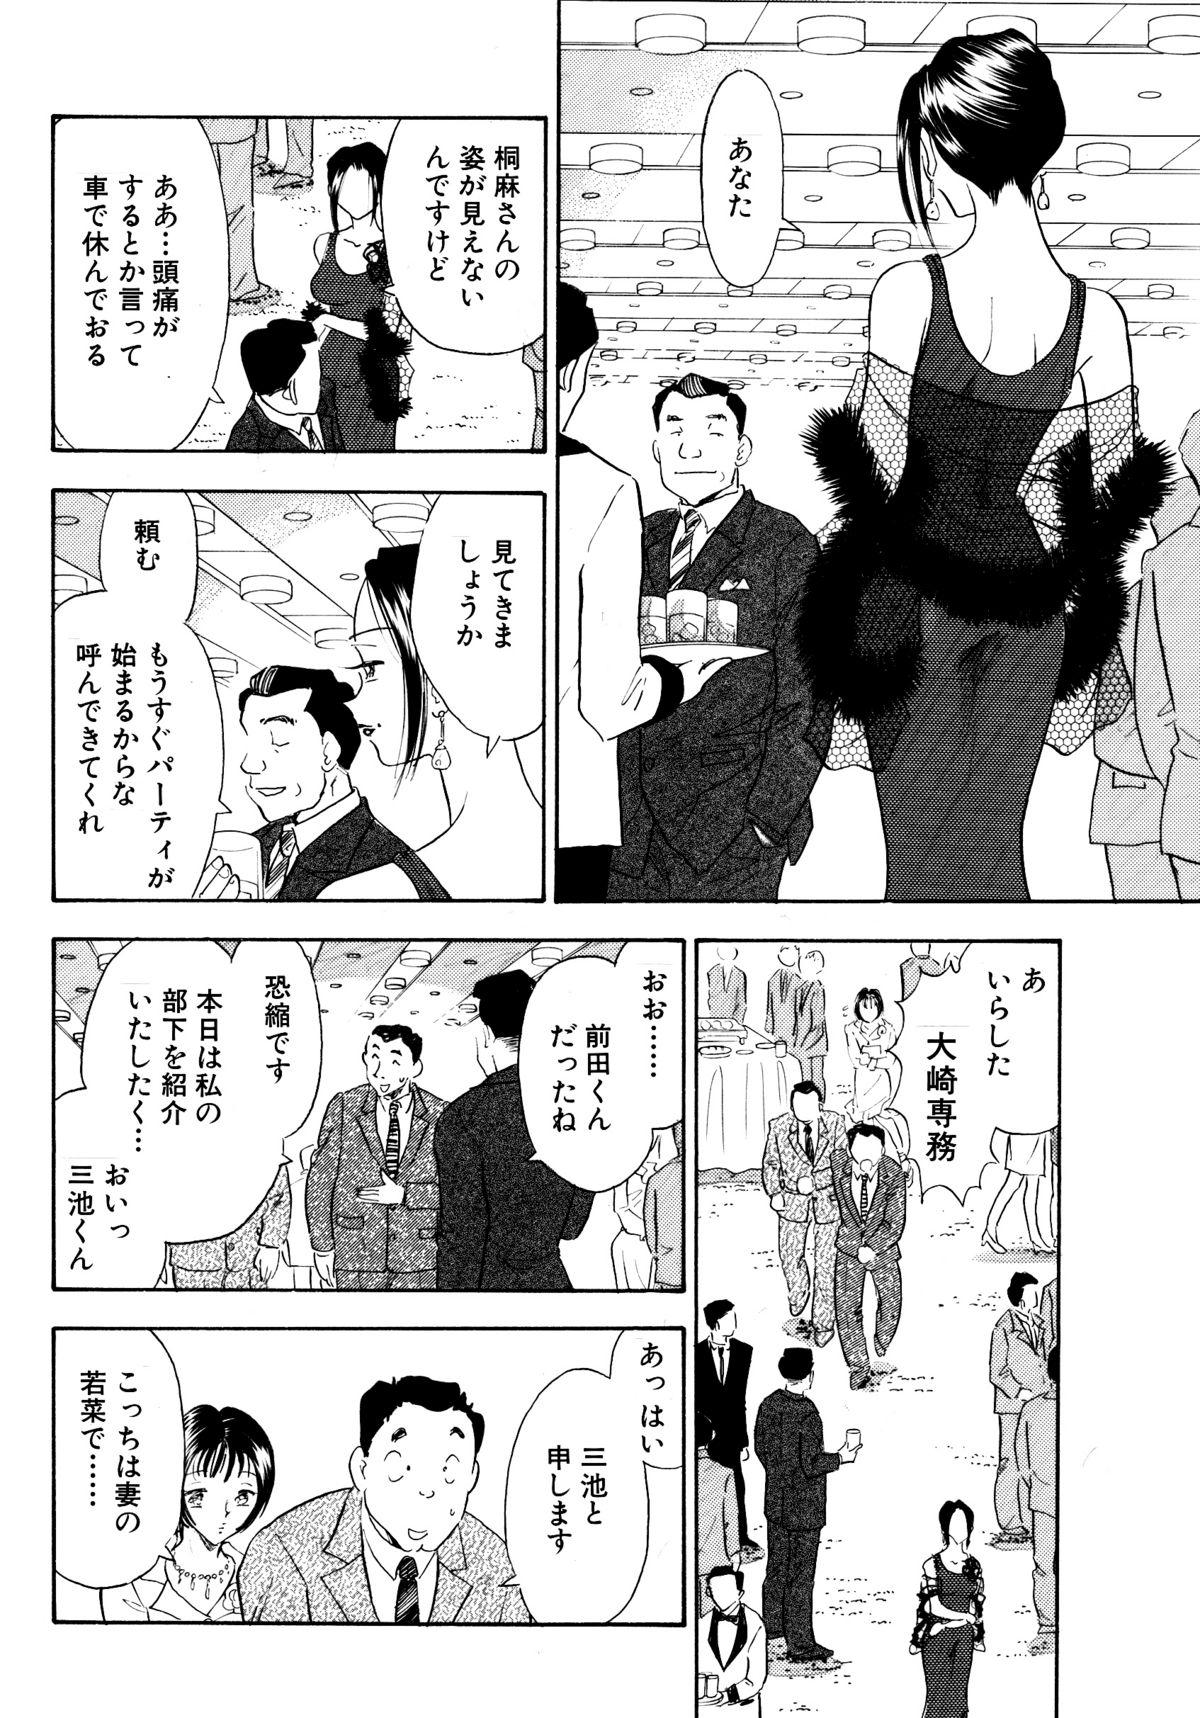 Leite Chijo tsuma 13 High - Page 8